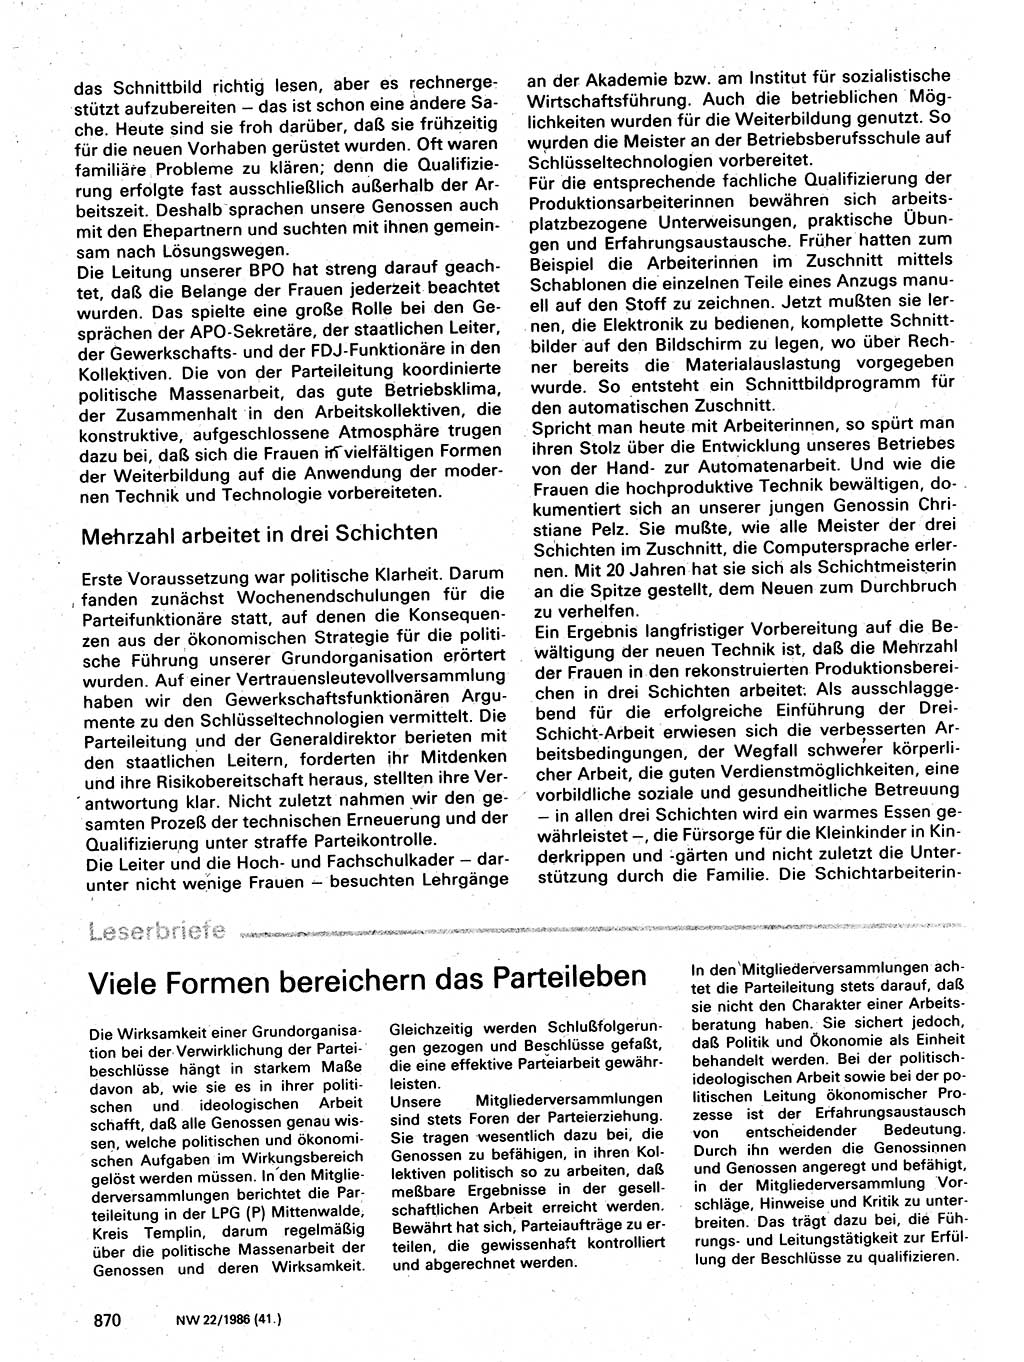 Neuer Weg (NW), Organ des Zentralkomitees (ZK) der SED (Sozialistische Einheitspartei Deutschlands) für Fragen des Parteilebens, 41. Jahrgang [Deutsche Demokratische Republik (DDR)] 1986, Seite 870 (NW ZK SED DDR 1986, S. 870)